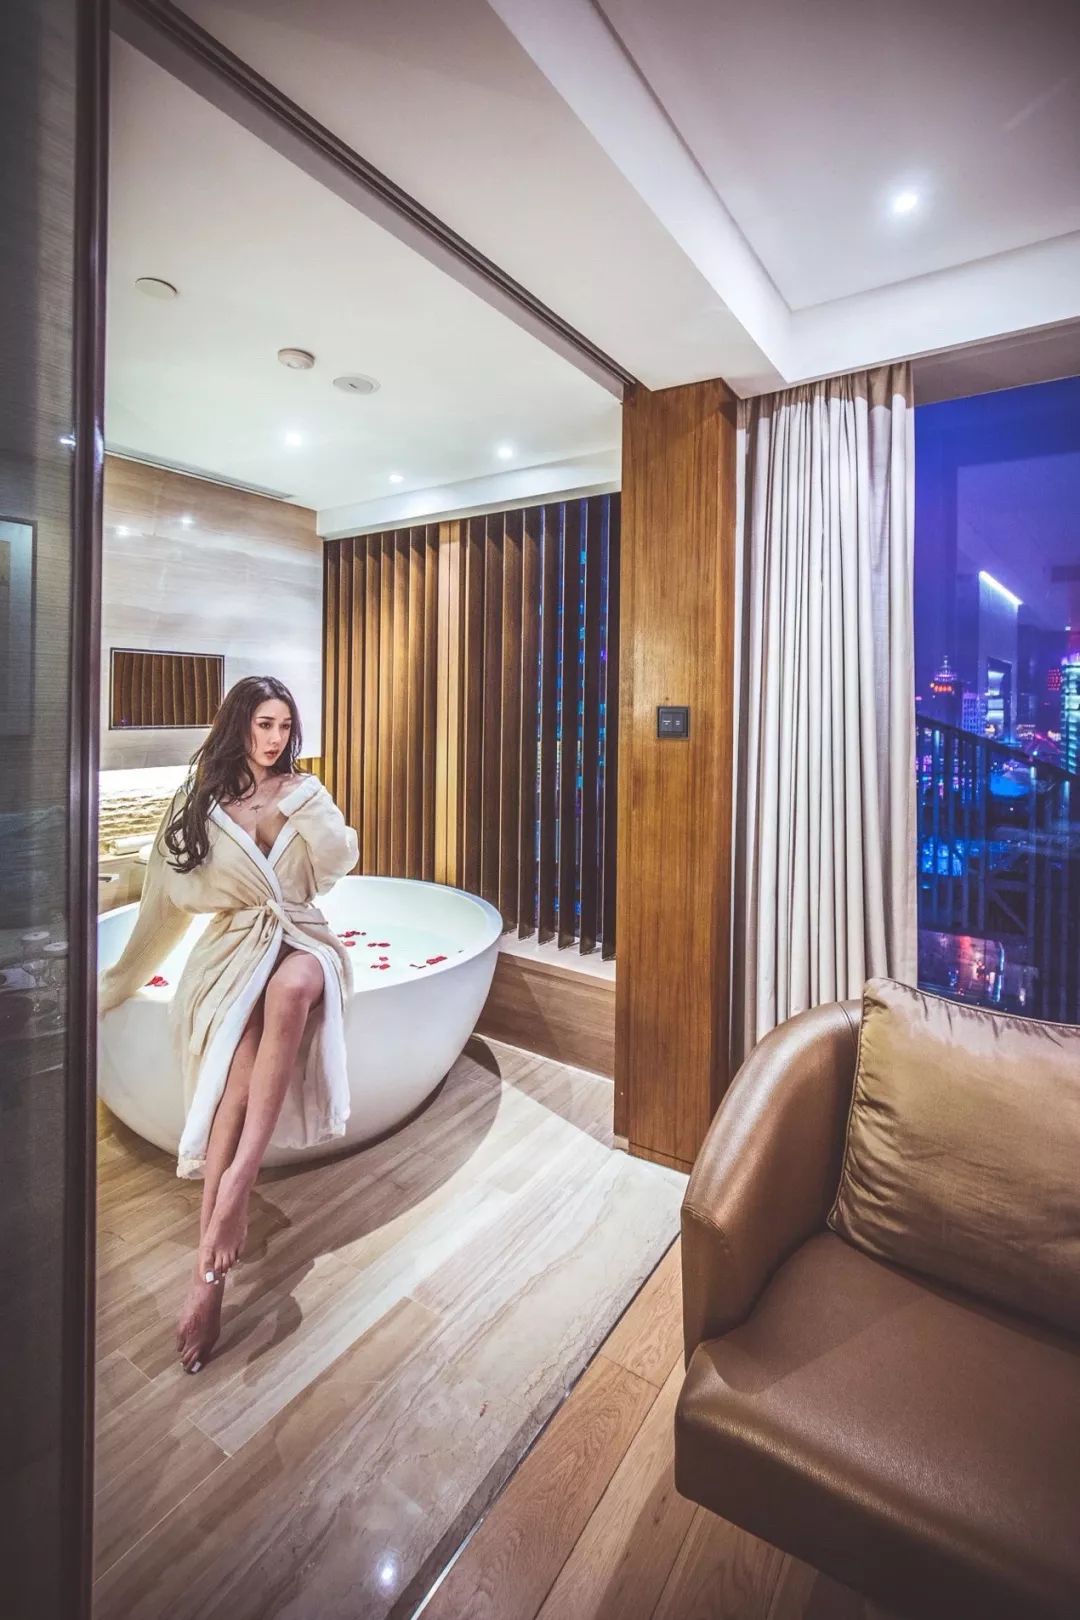 上海夏威夷浴室图片